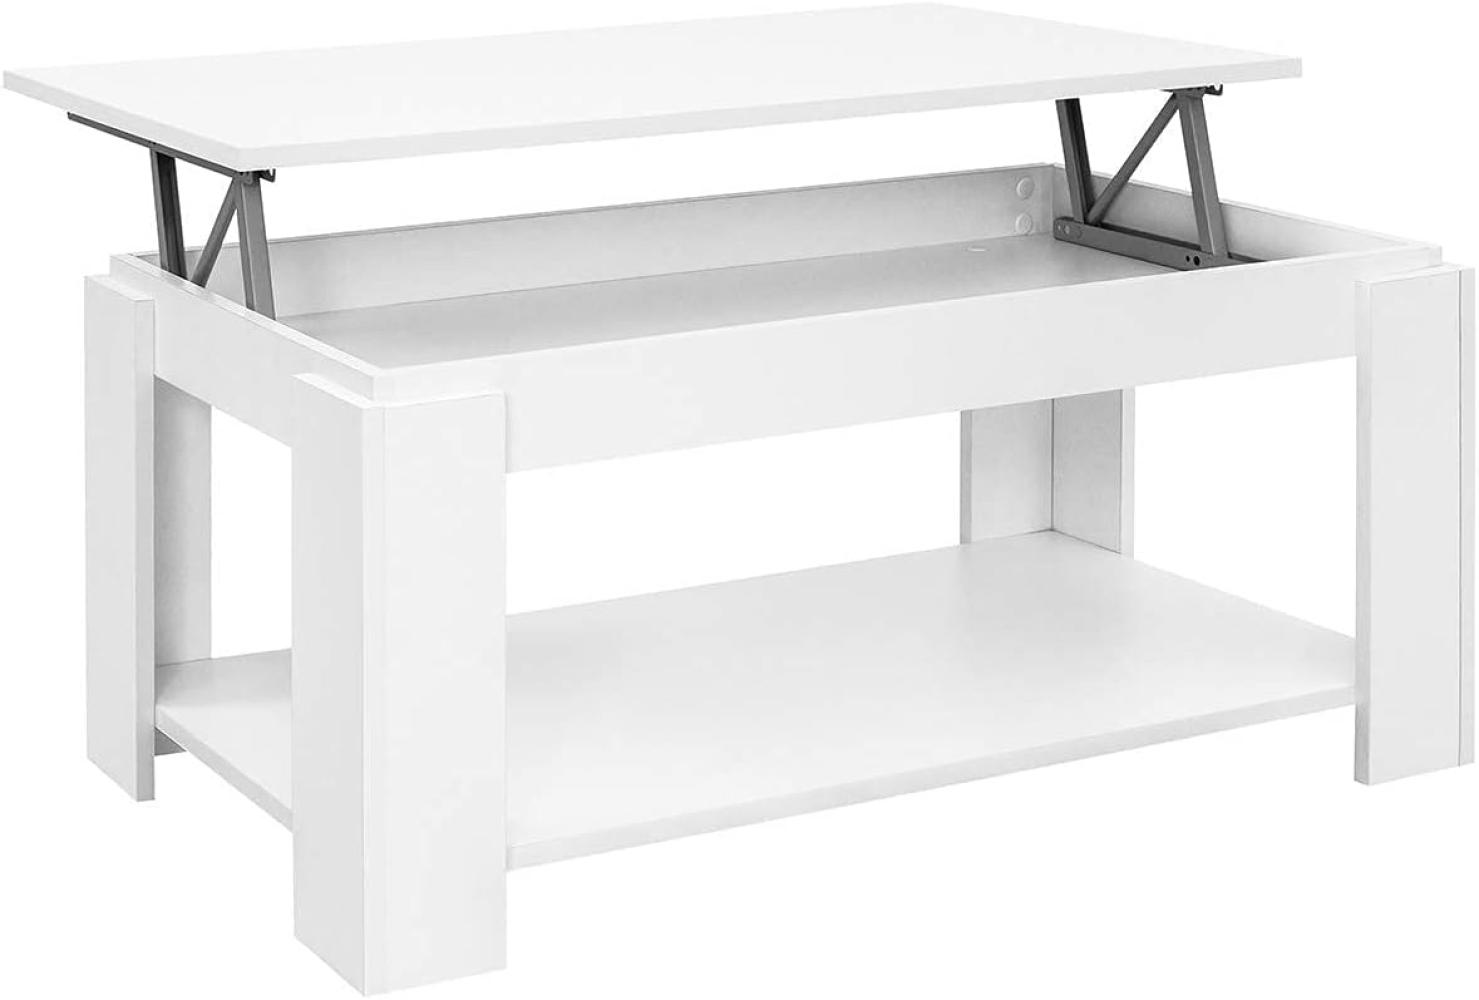 COMIFORT Höhenverstellbarer Couchtisch - Möbelstück mit Zeitschriftenfach, Viel Stauraum, Moderner Stil, Sehr Belastbar, Farbe: Weiß Bild 1